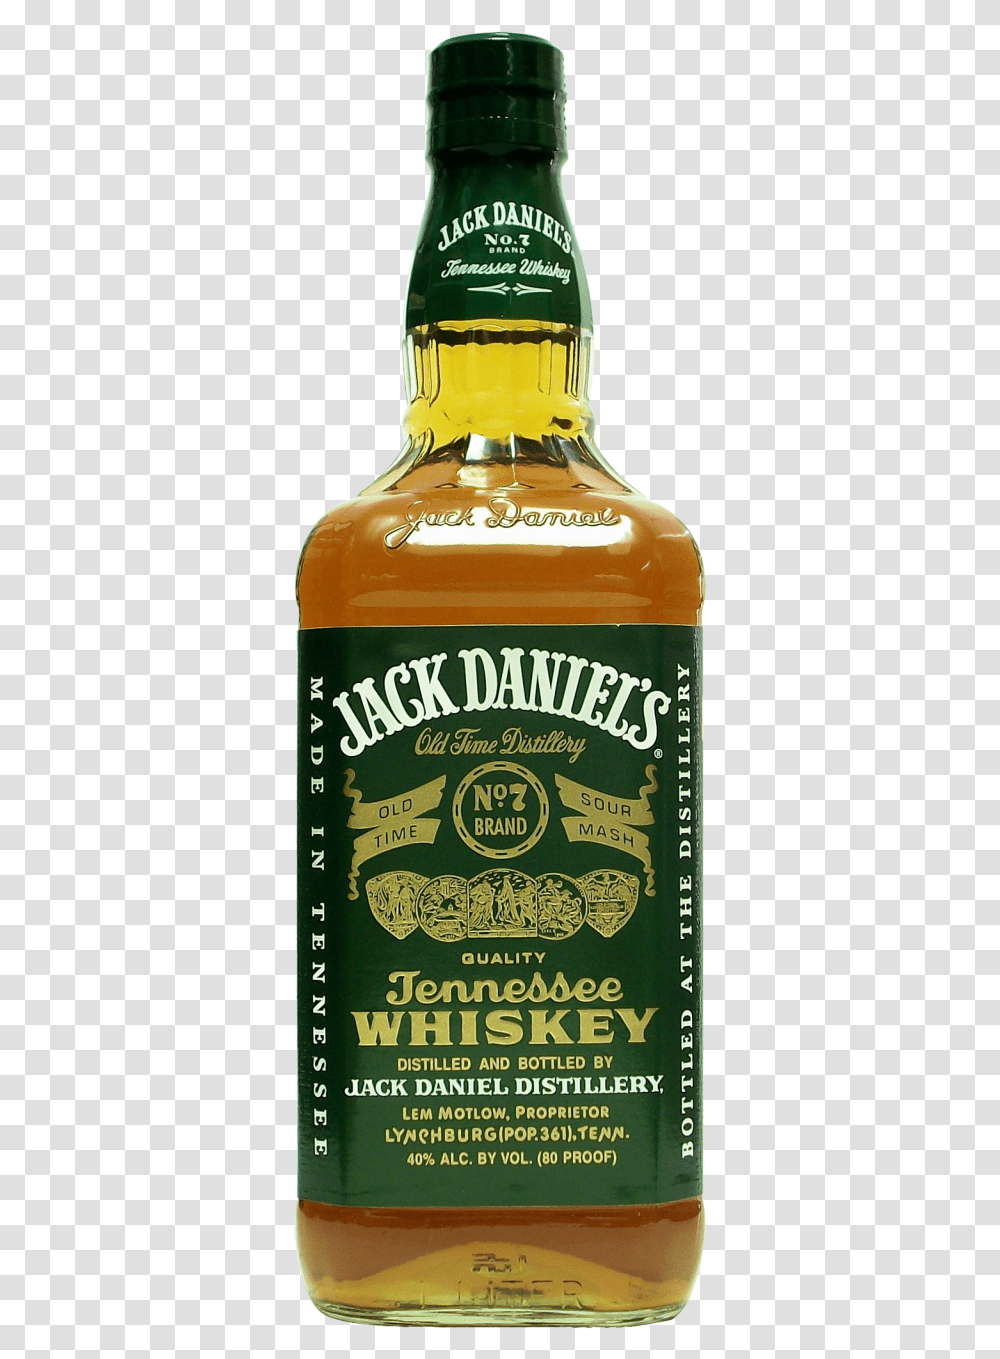 Jack Daniels Bottle Jack Daniels Green Label Price, Liquor, Alcohol, Beverage, Drink Transparent Png